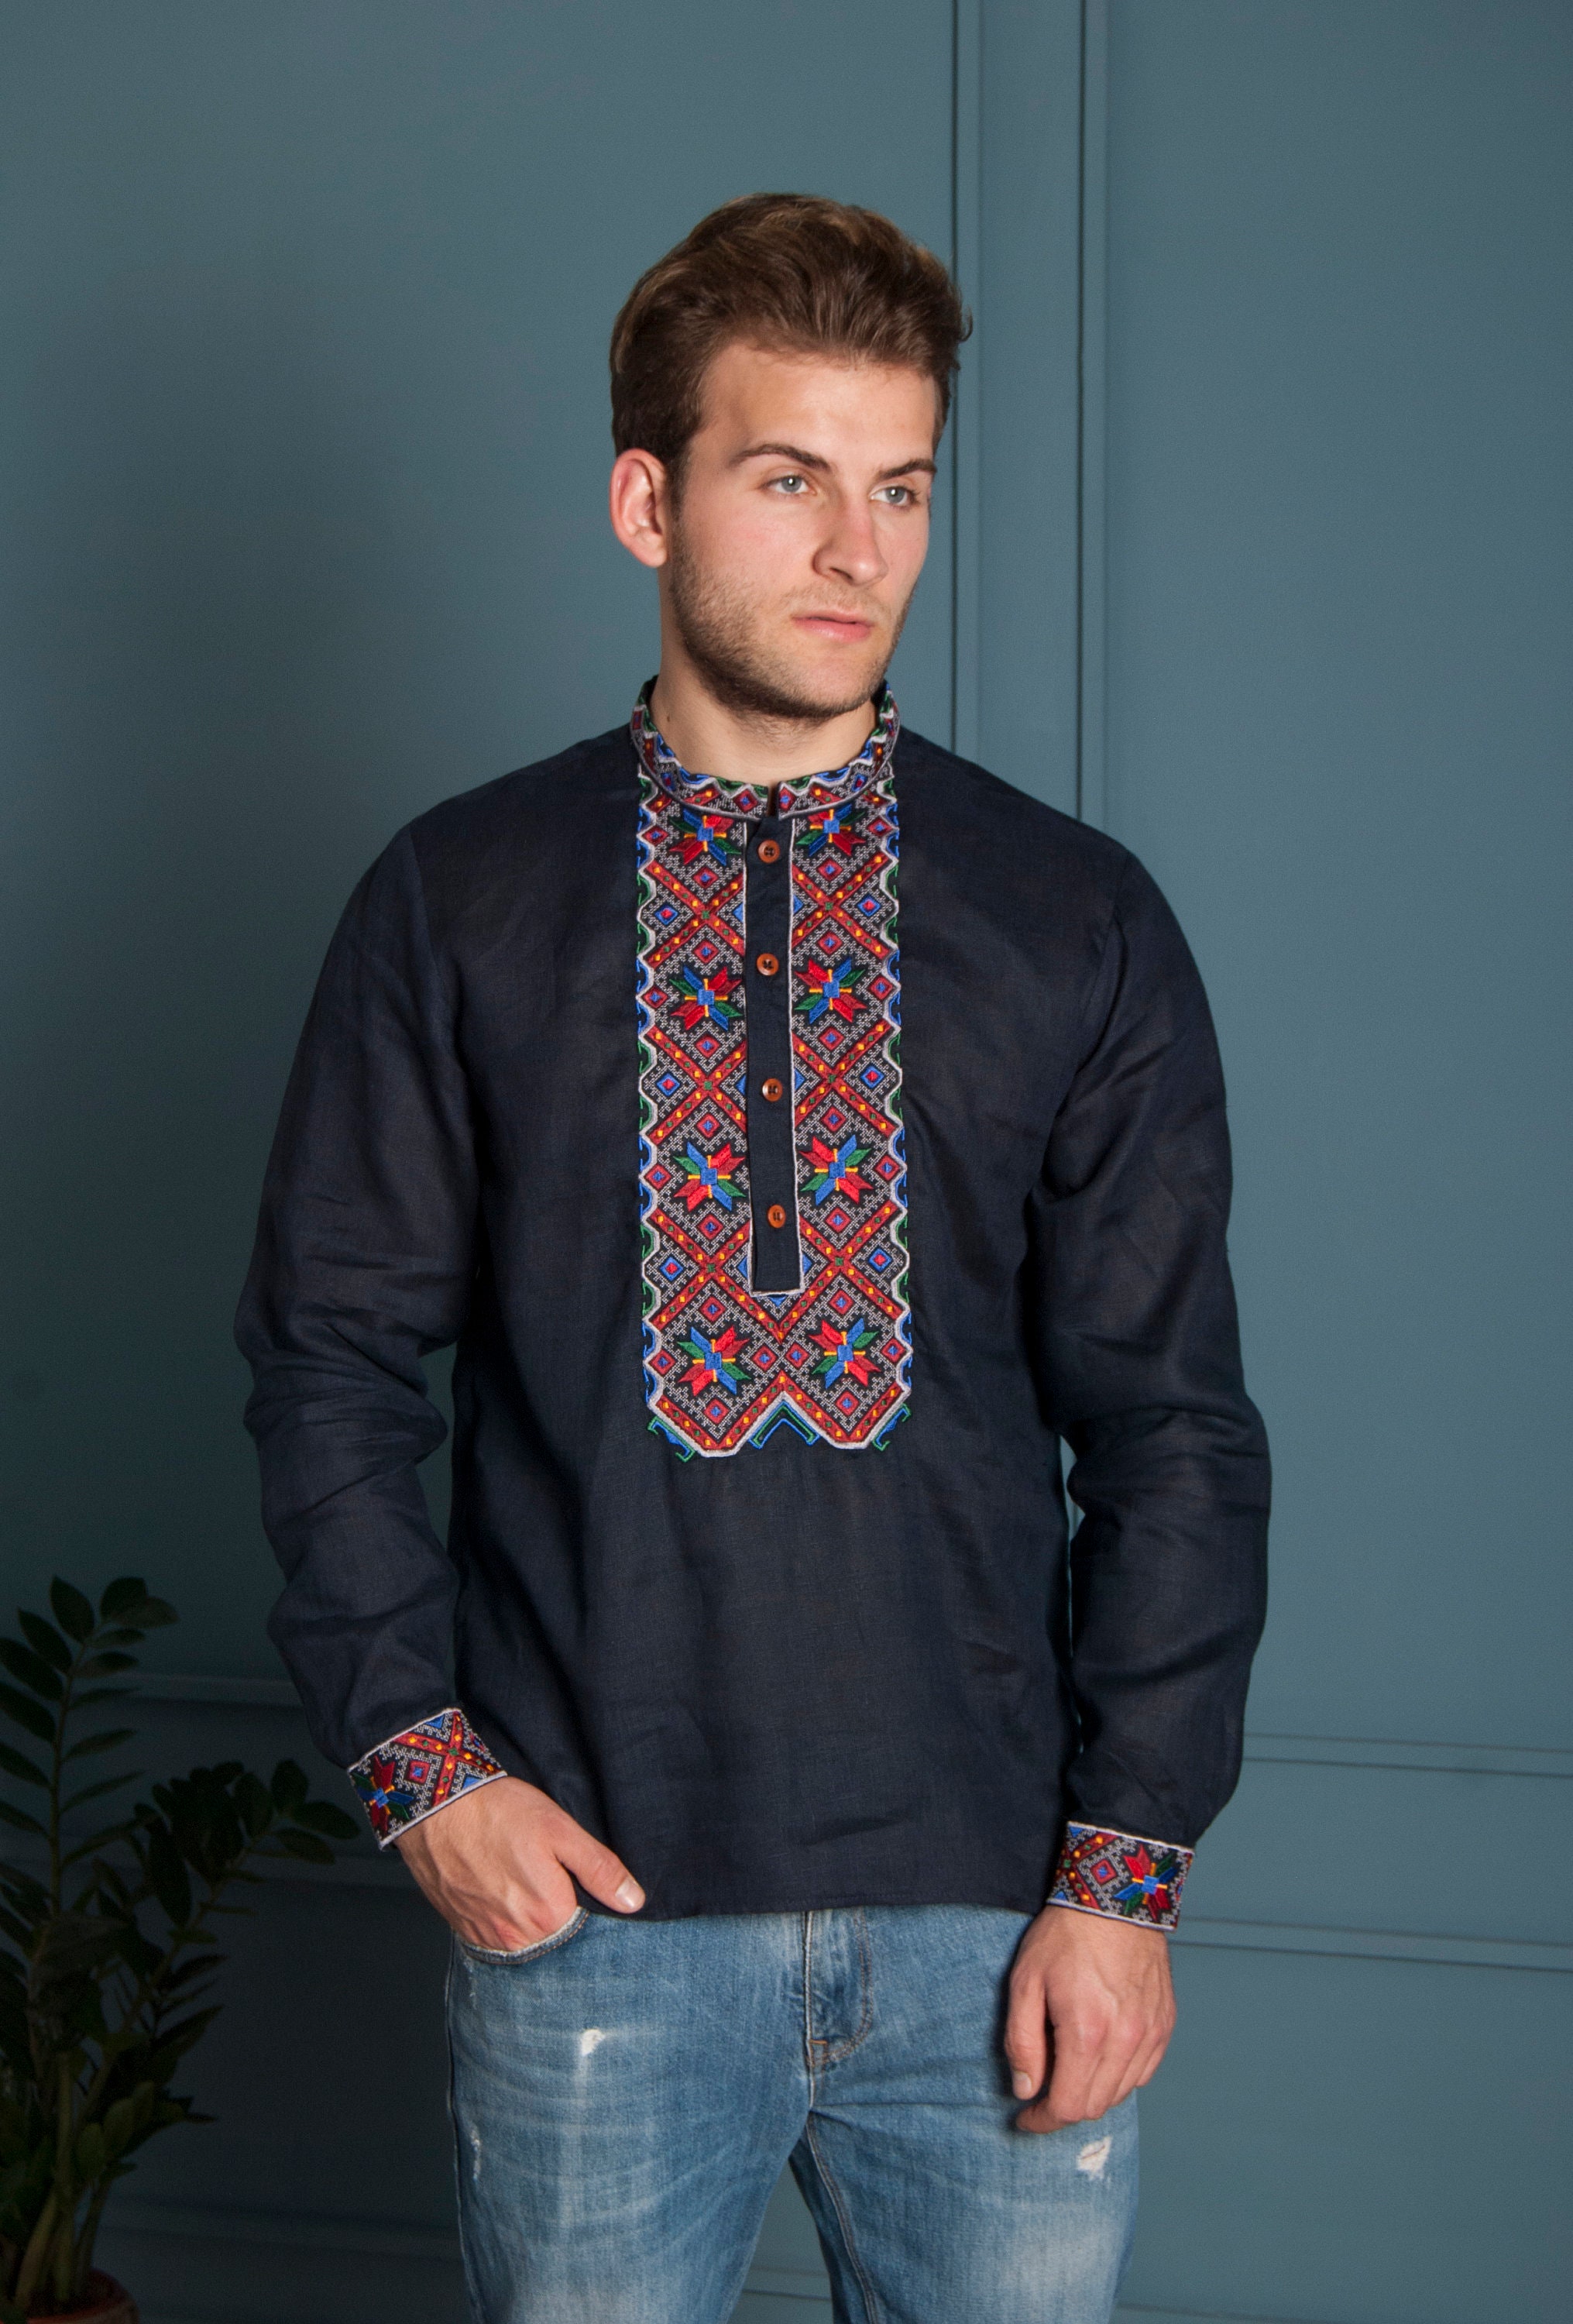 Ukrainian Blue shirt for men. Embroidered shirt. Men's | Etsy